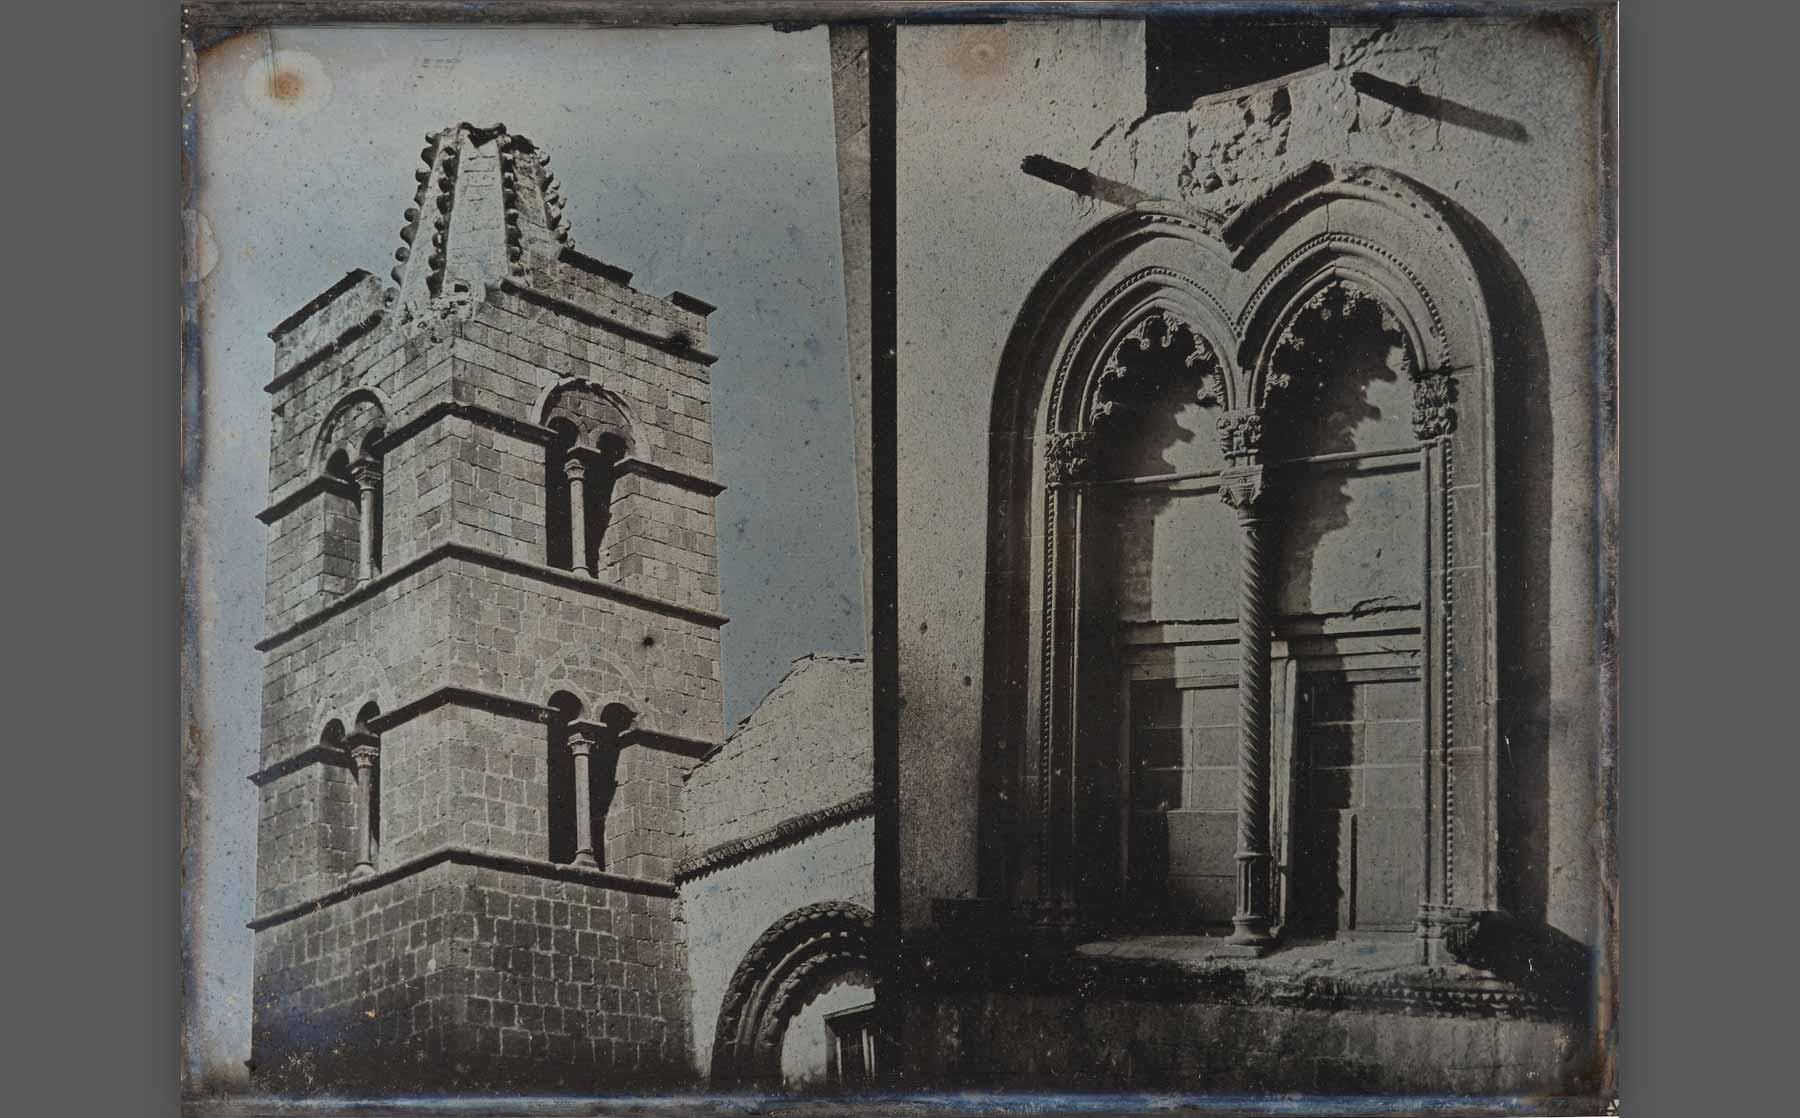 Girault de Prangey, “Window and Bell Tower, Corneto” (1842), daguerreotype.